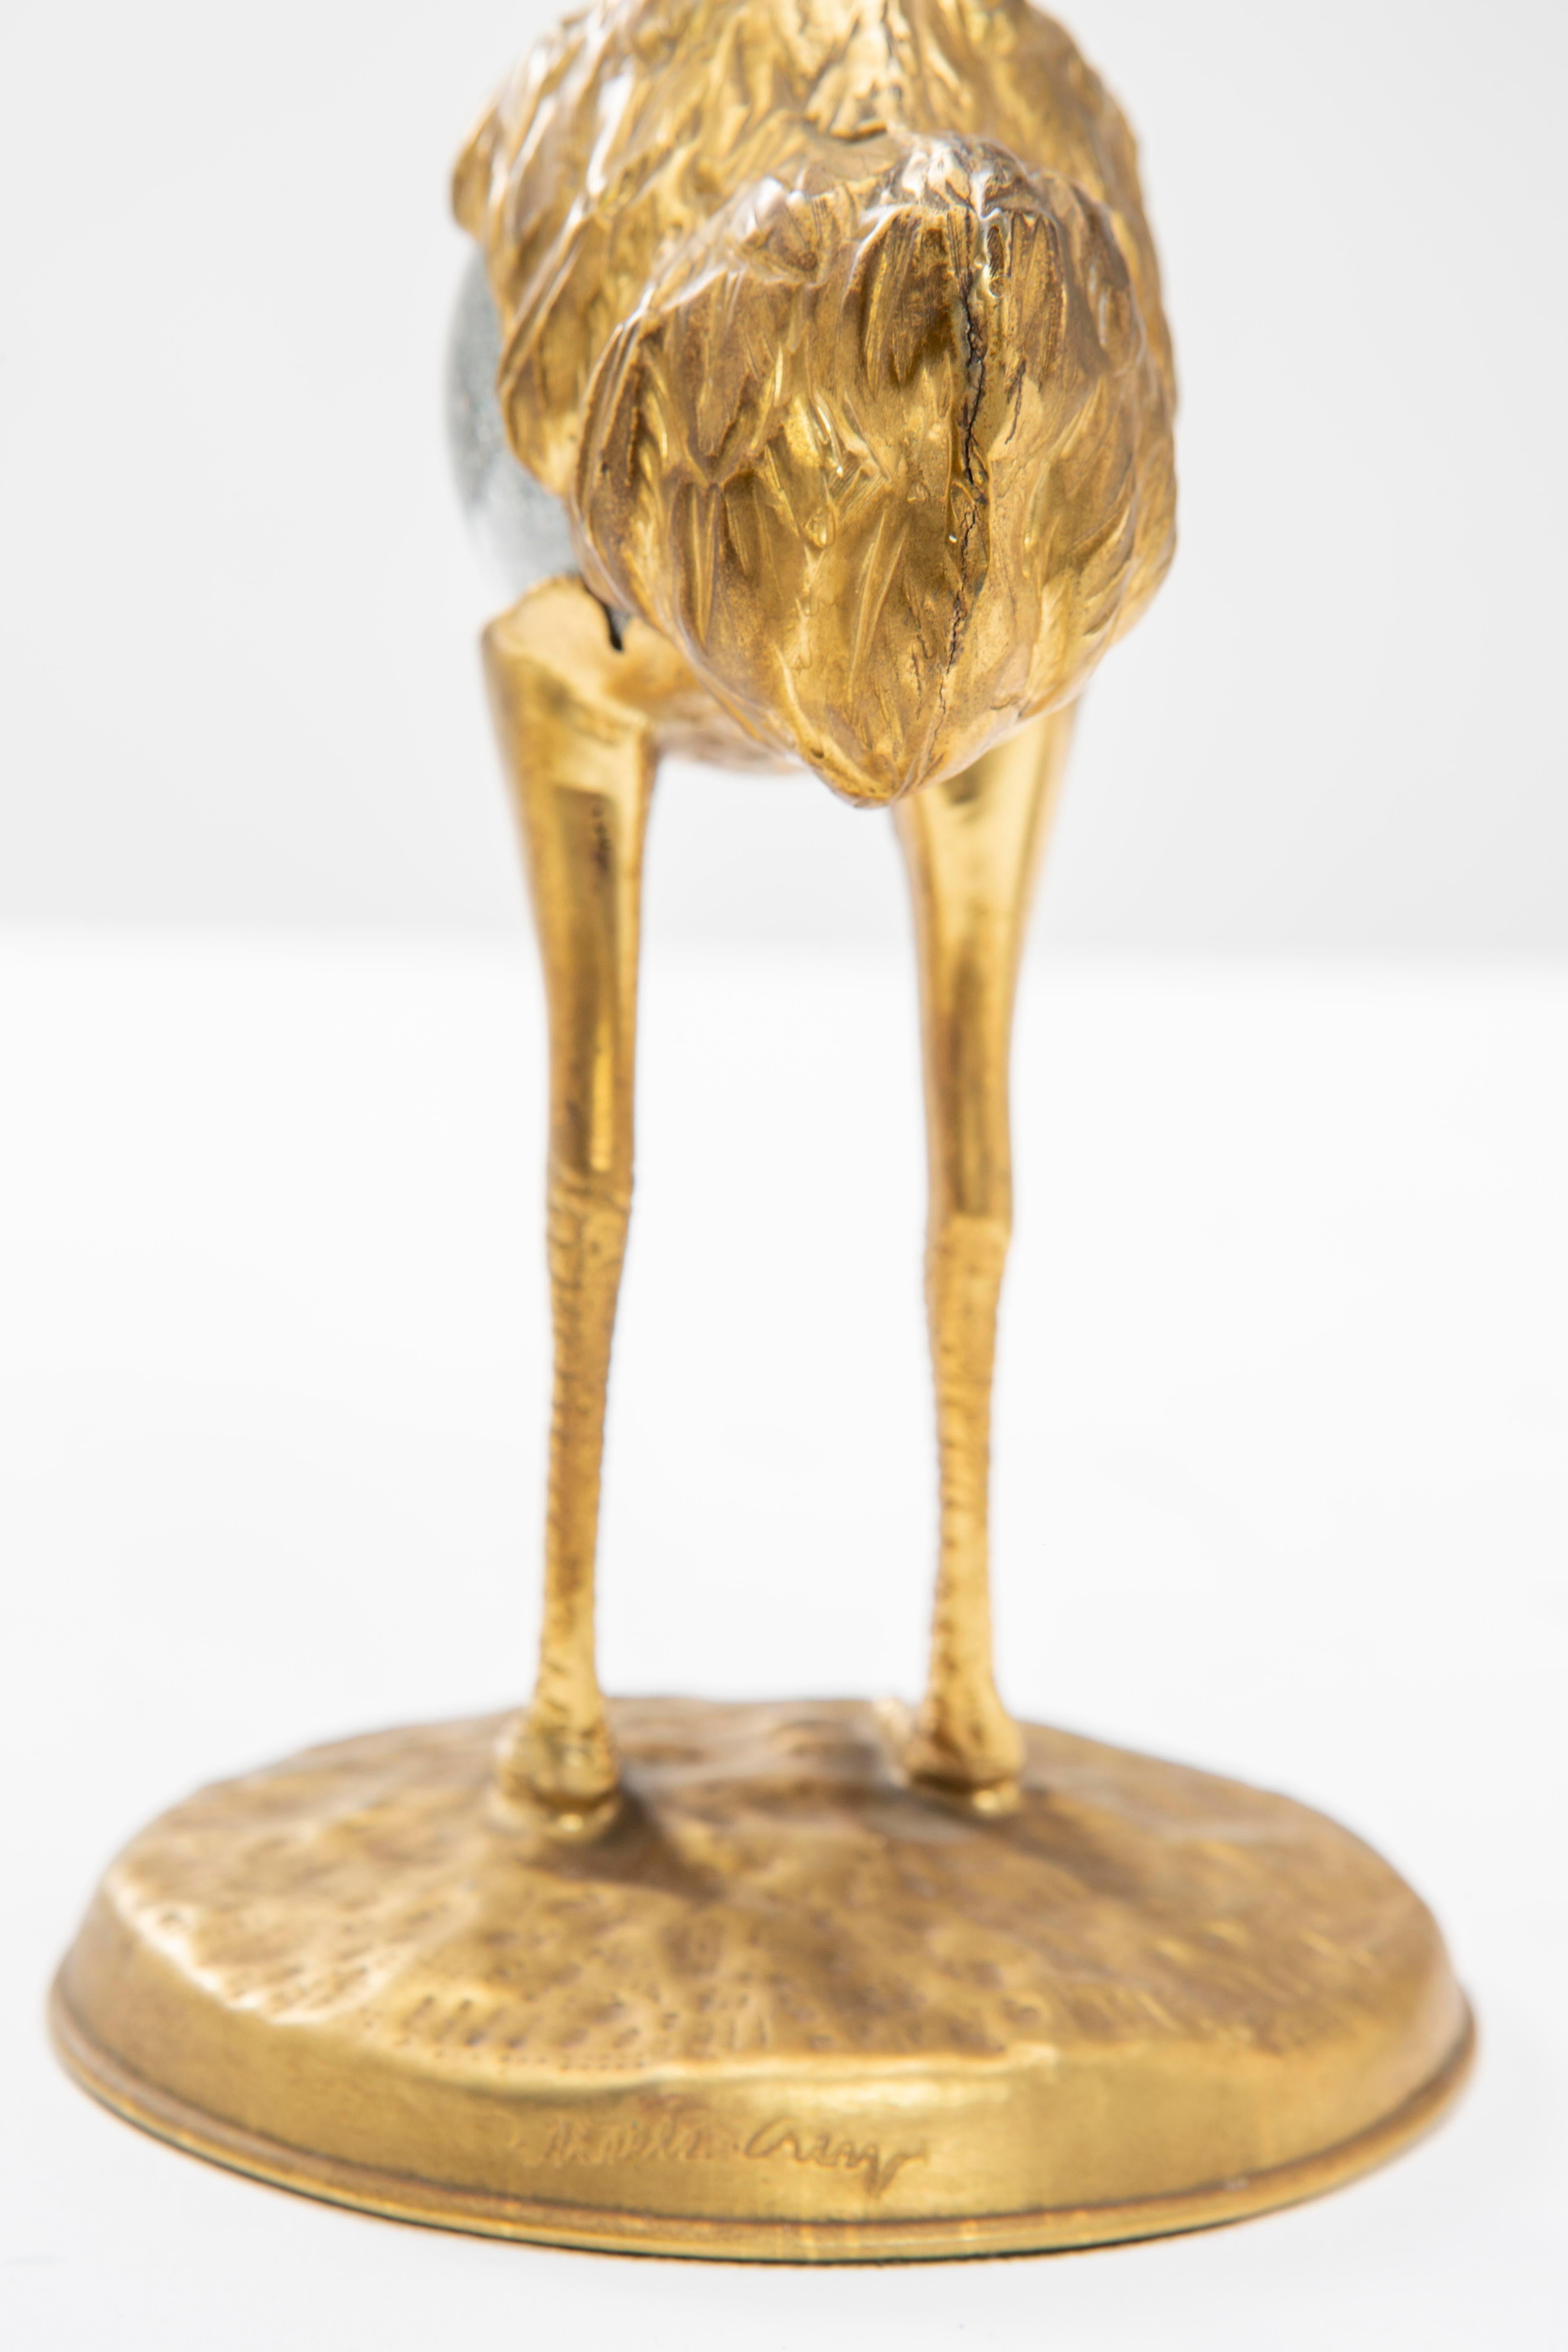 Bronze Gabriella Crespi Two lost-wax bronze ostriches with Murano glass body - 1970s For Sale